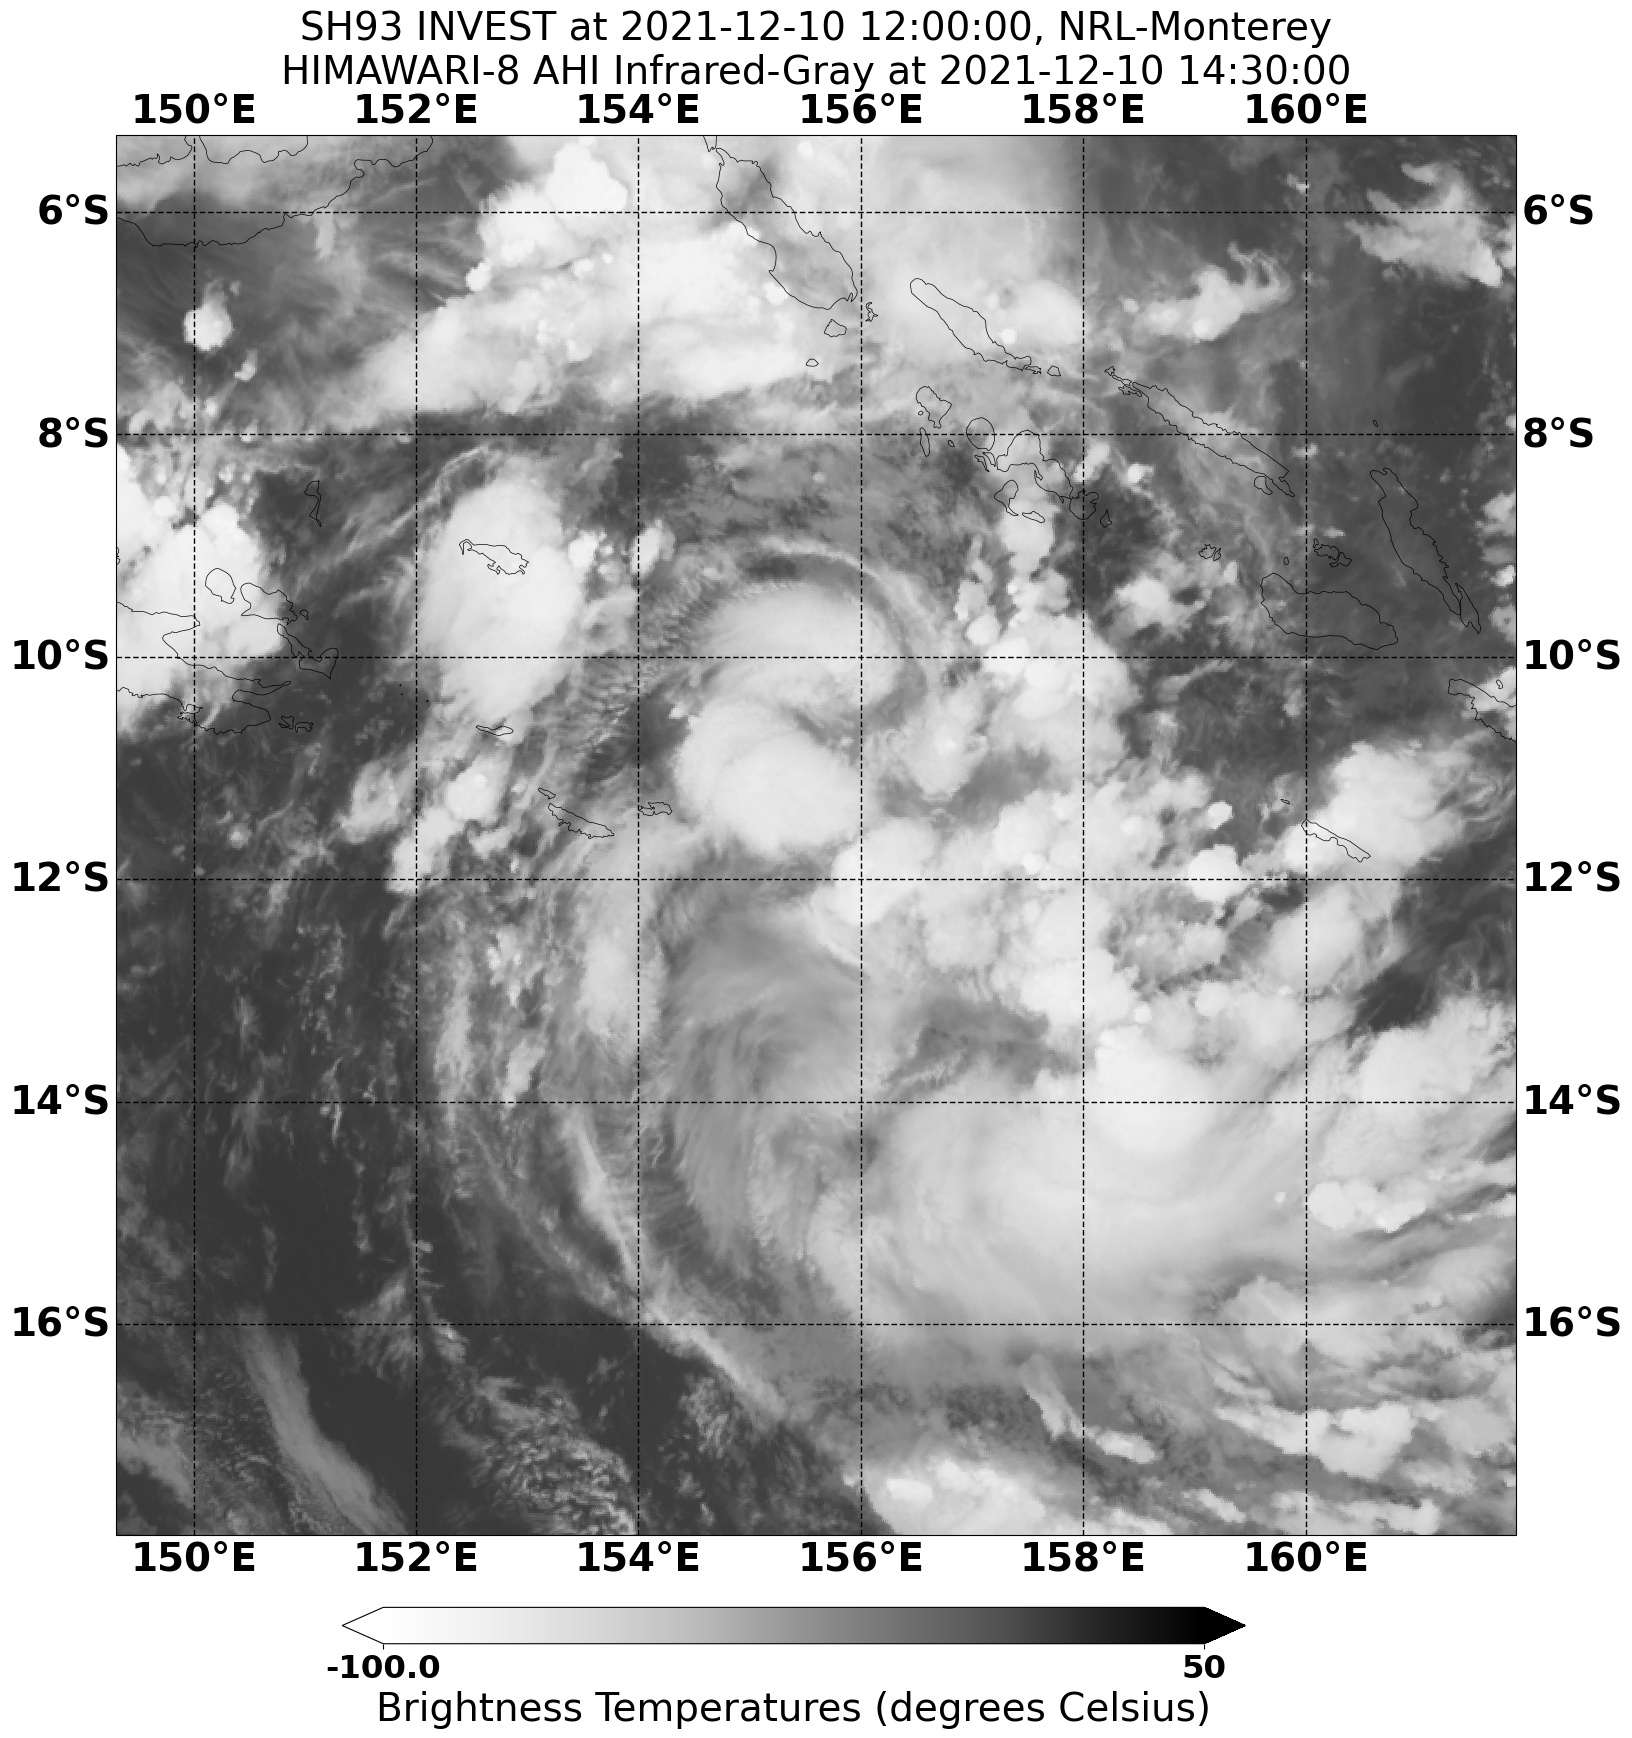 20211210.143000.SH932022.ahi.himawari-8.Infrared-Gray.25kts.100p0.1p0.jpg